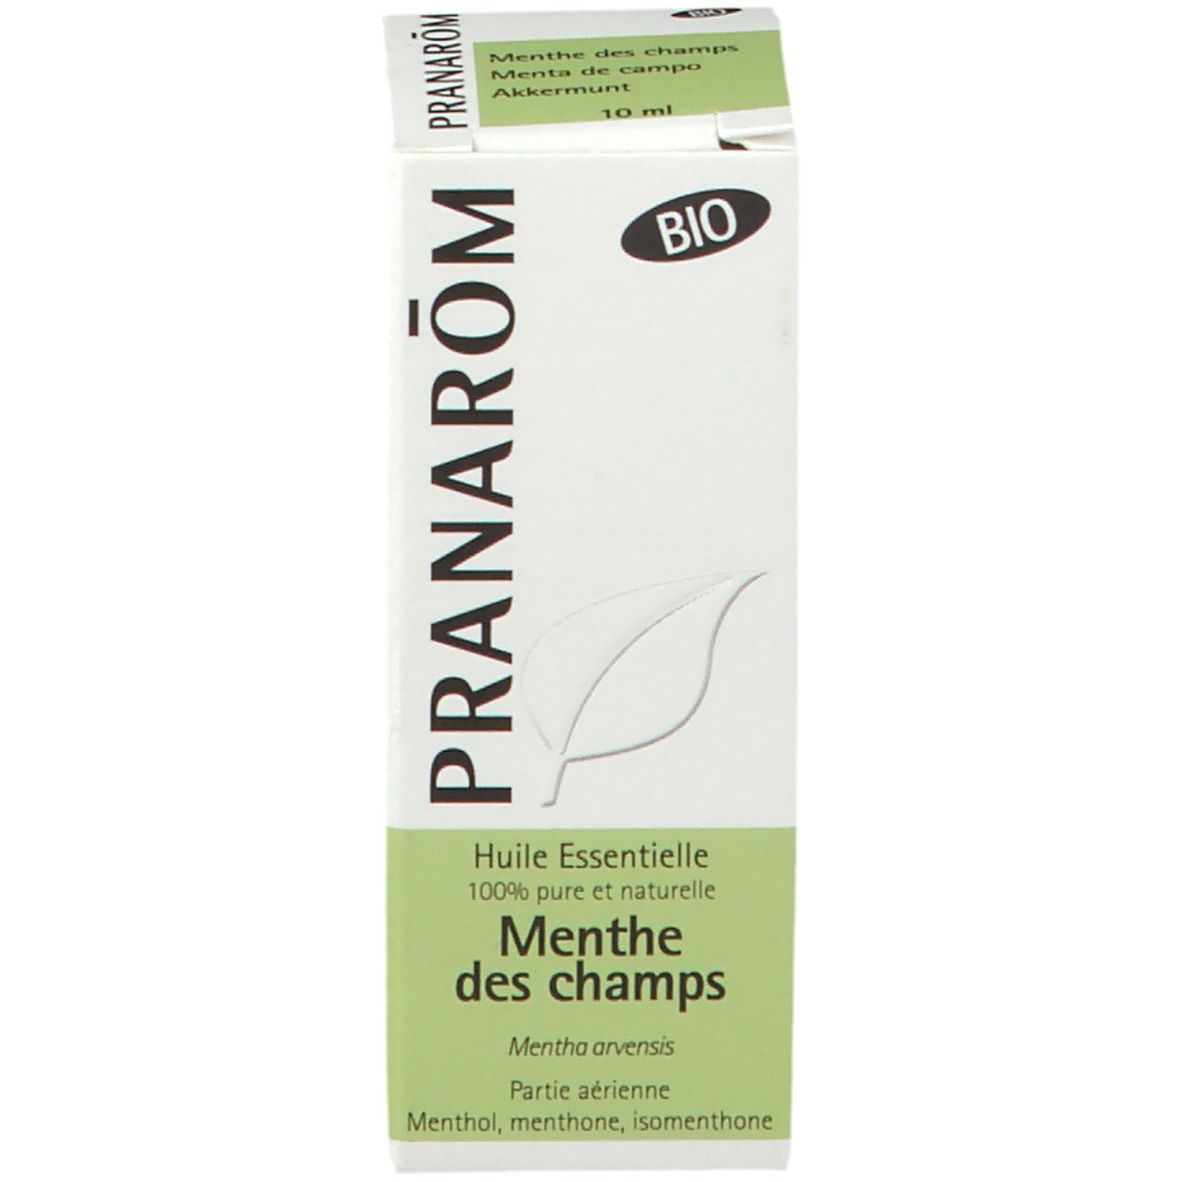 PRANARÔM - Menthe Des Champs Bio - Huile Essentielle Chémotypée - Digestion - Pure Et Naturelle - HECT - 10 ml